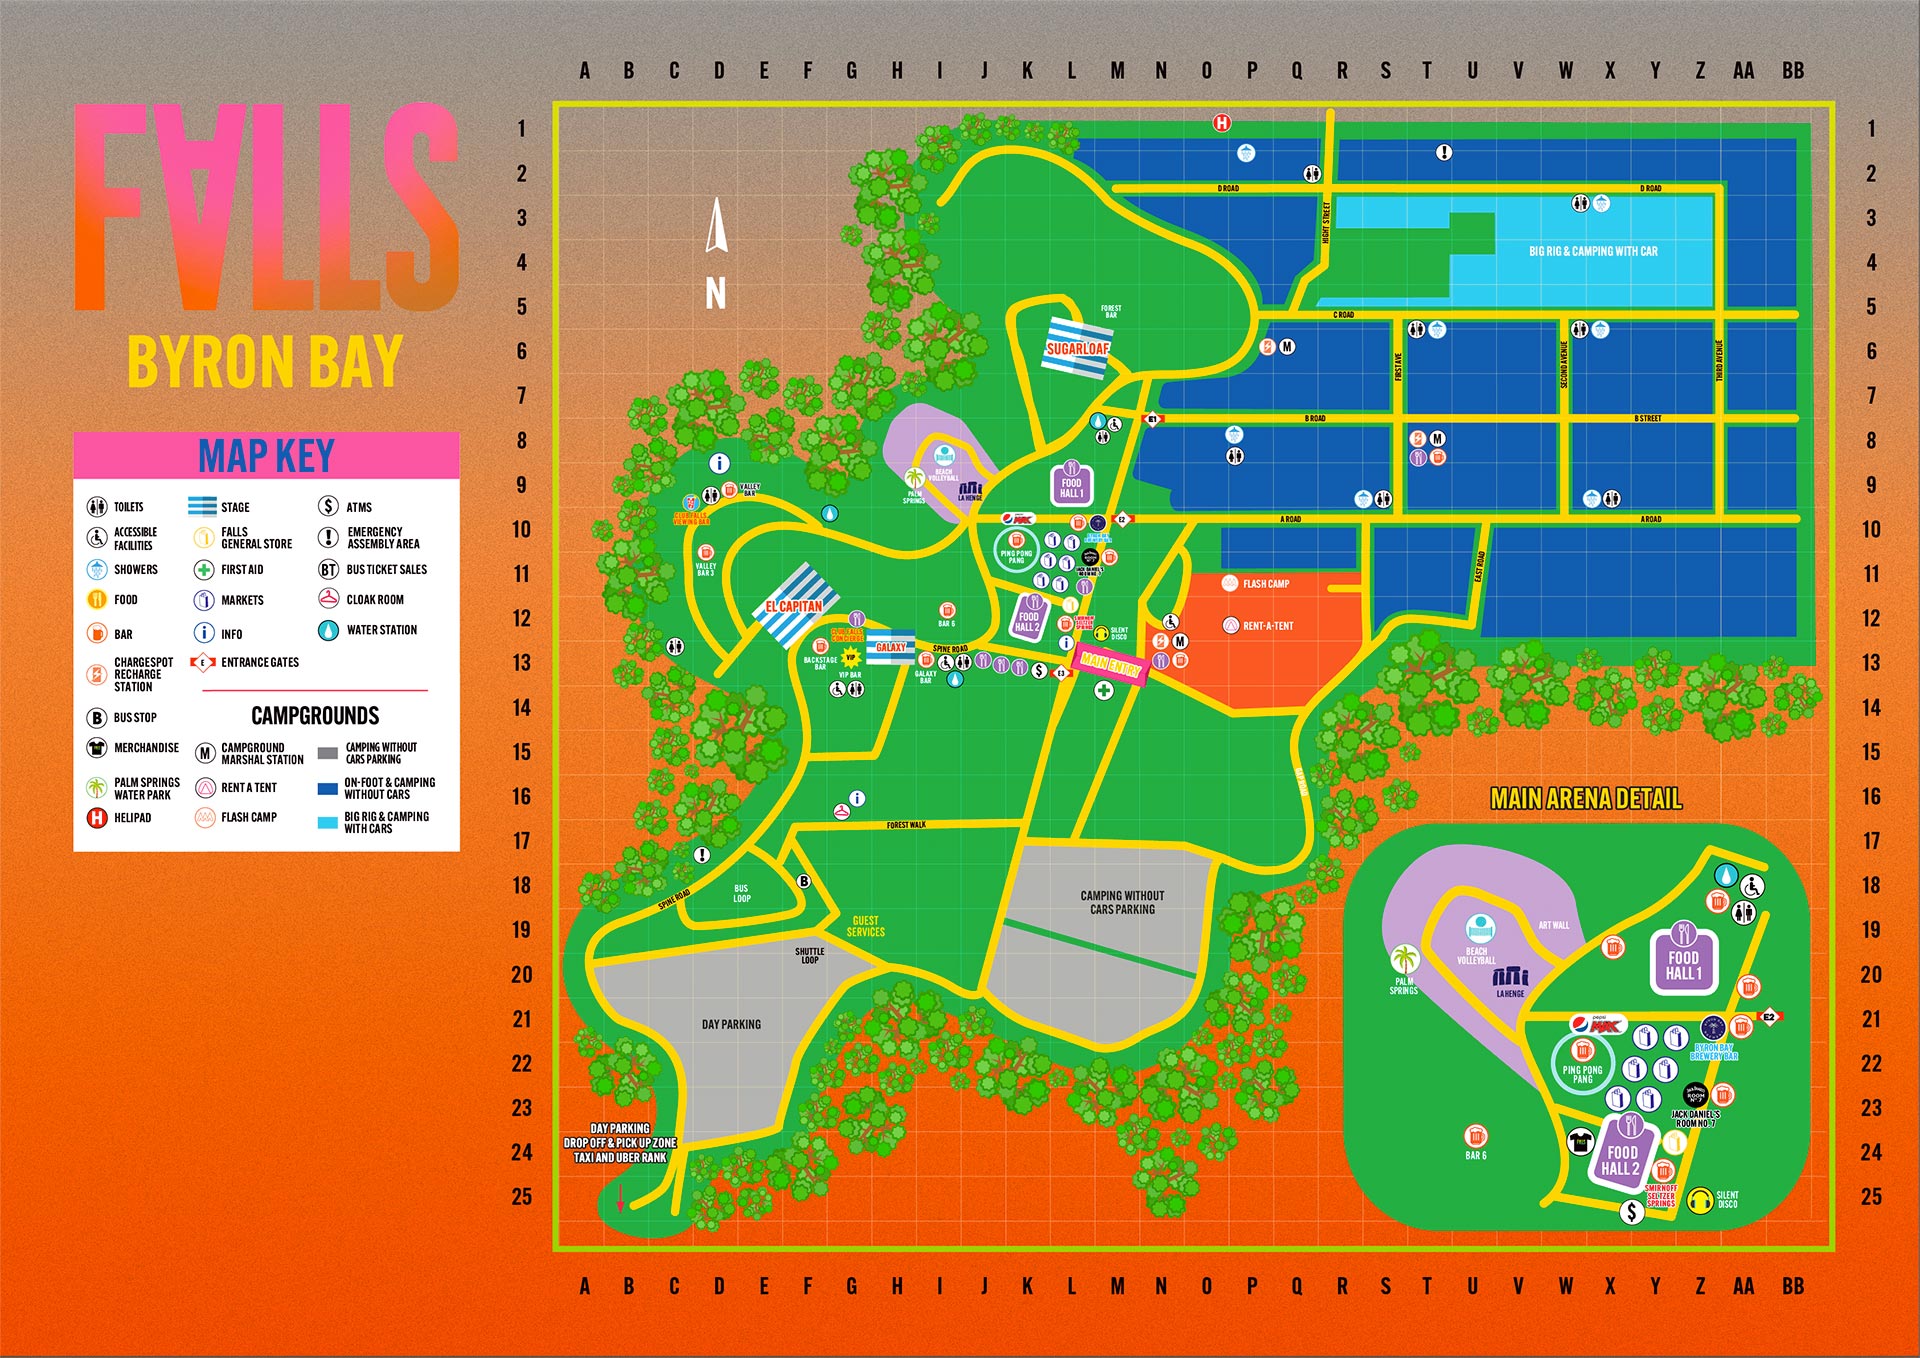 falls-festival-map-byron-bay